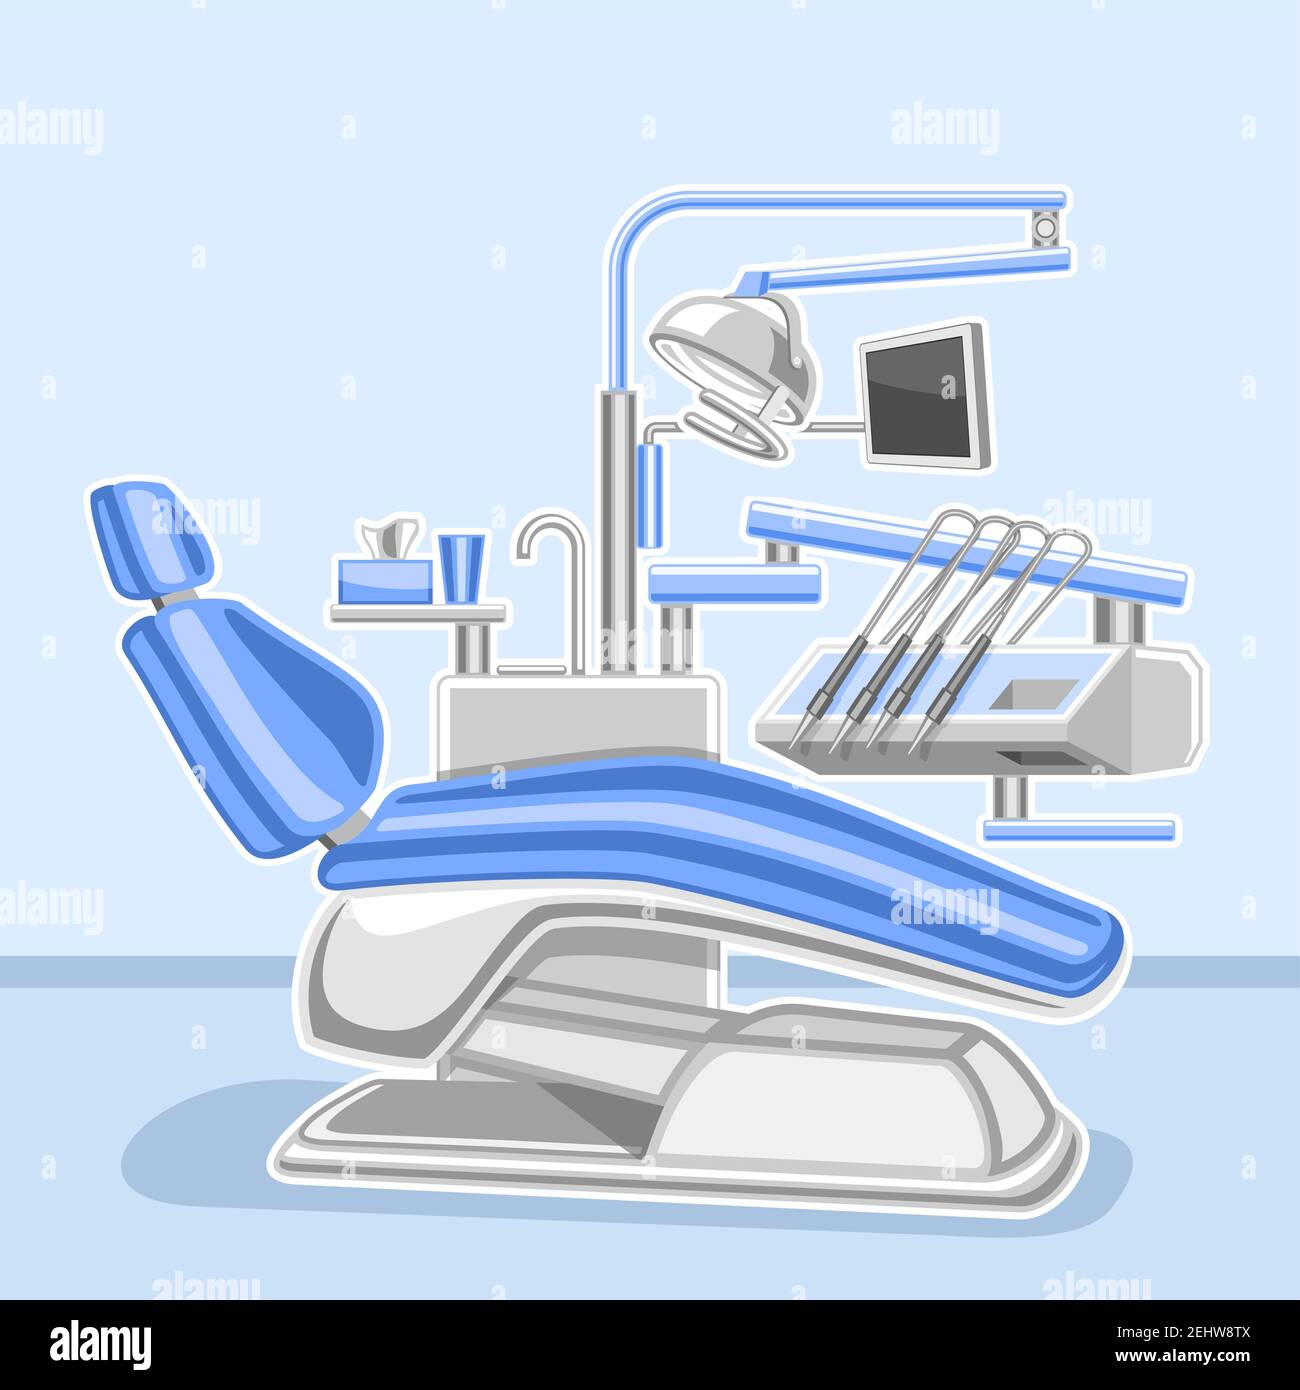 Affiche vectorielle pour clinique dentaire, affichage carré avec illustration de l'armoire dentaire intérieure, panneau décoratif avec dossier médical professionnel Illustration de Vecteur